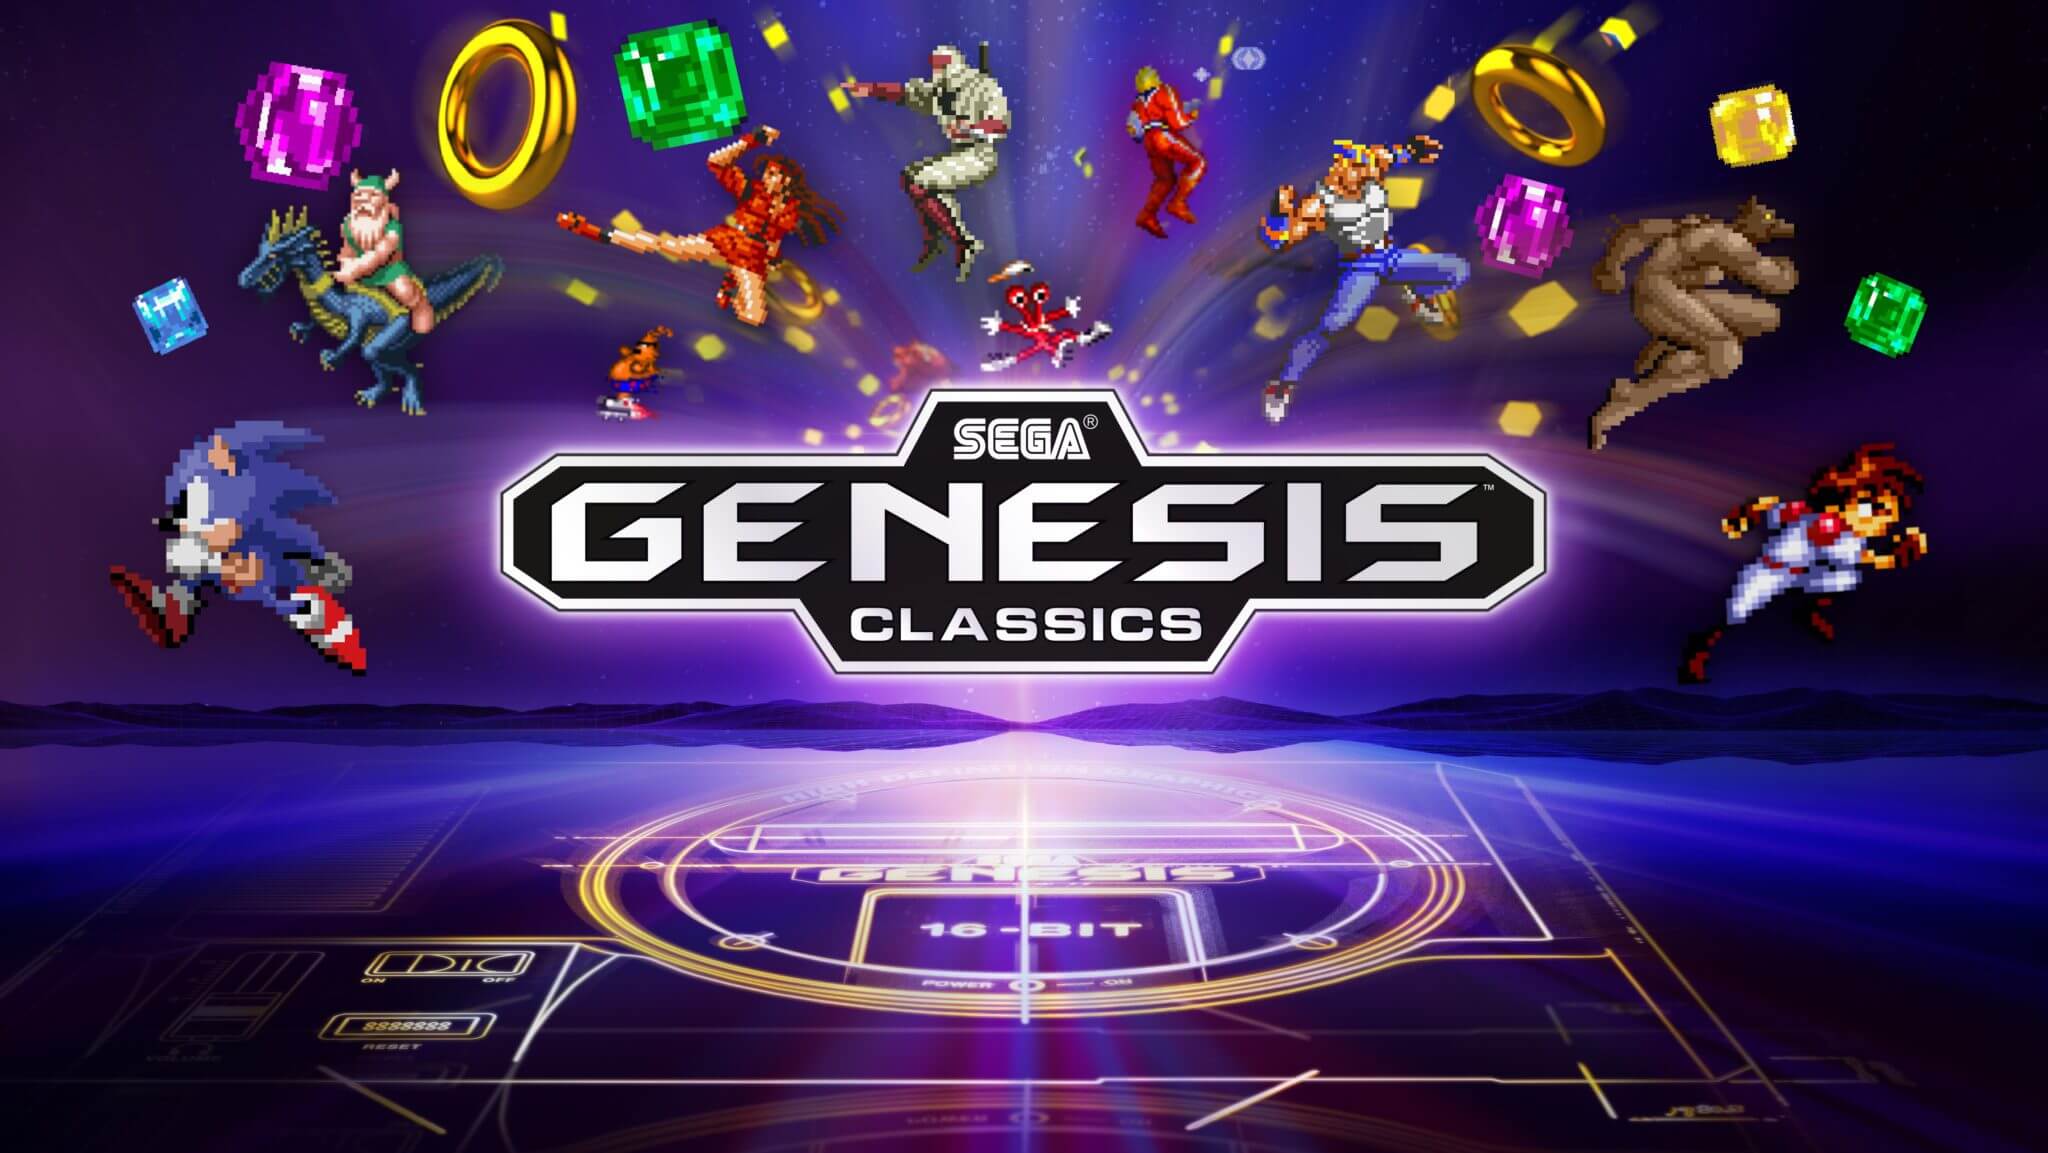 download sega genesis classics games for free